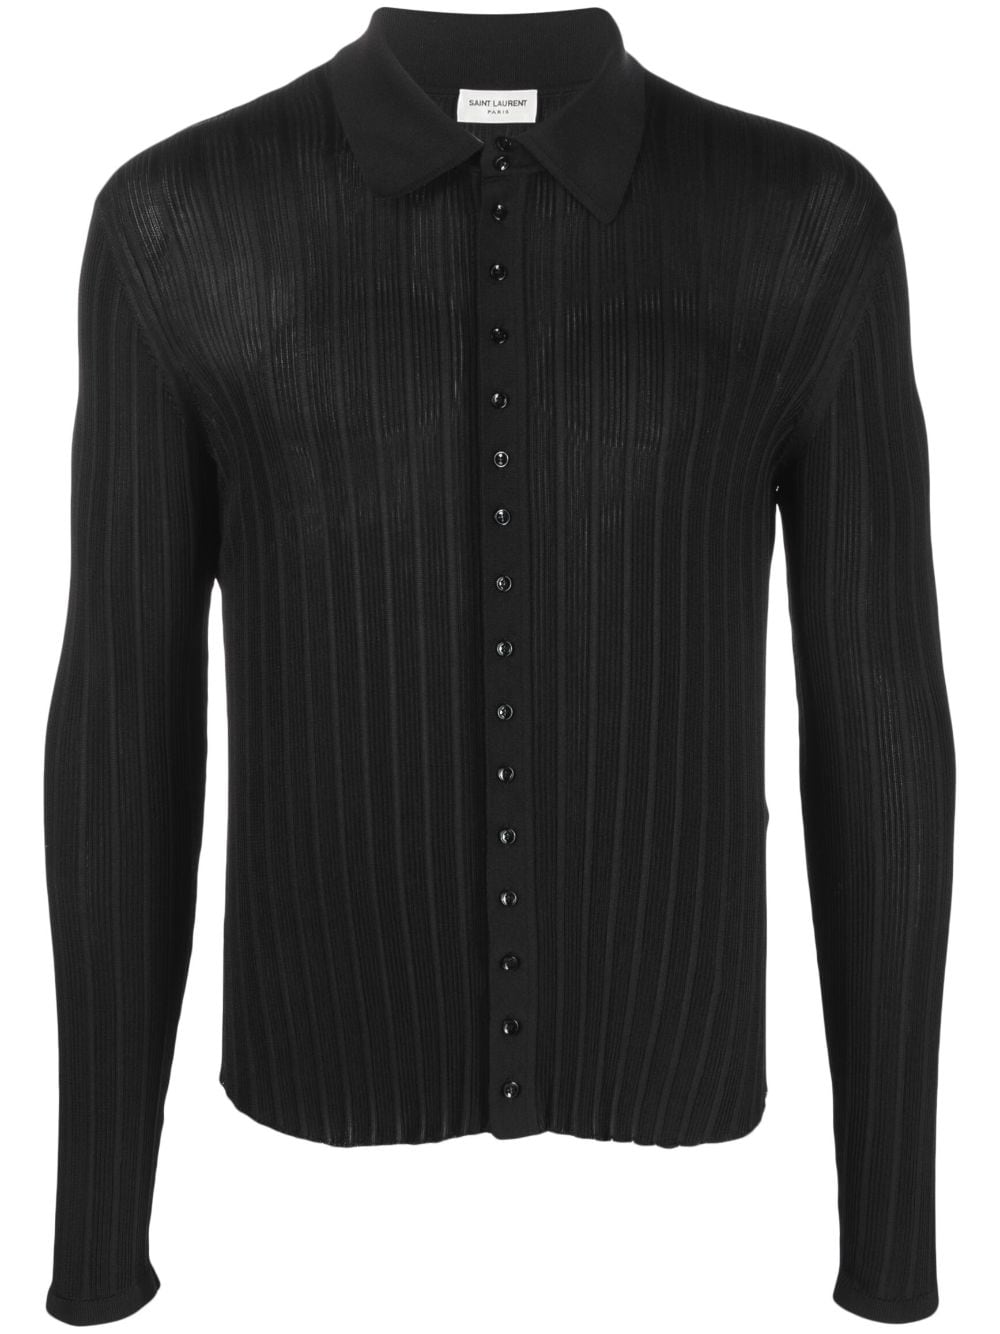 Saint Laurent chemise boutonnée à manches longues - Noir Top Merken Winkel